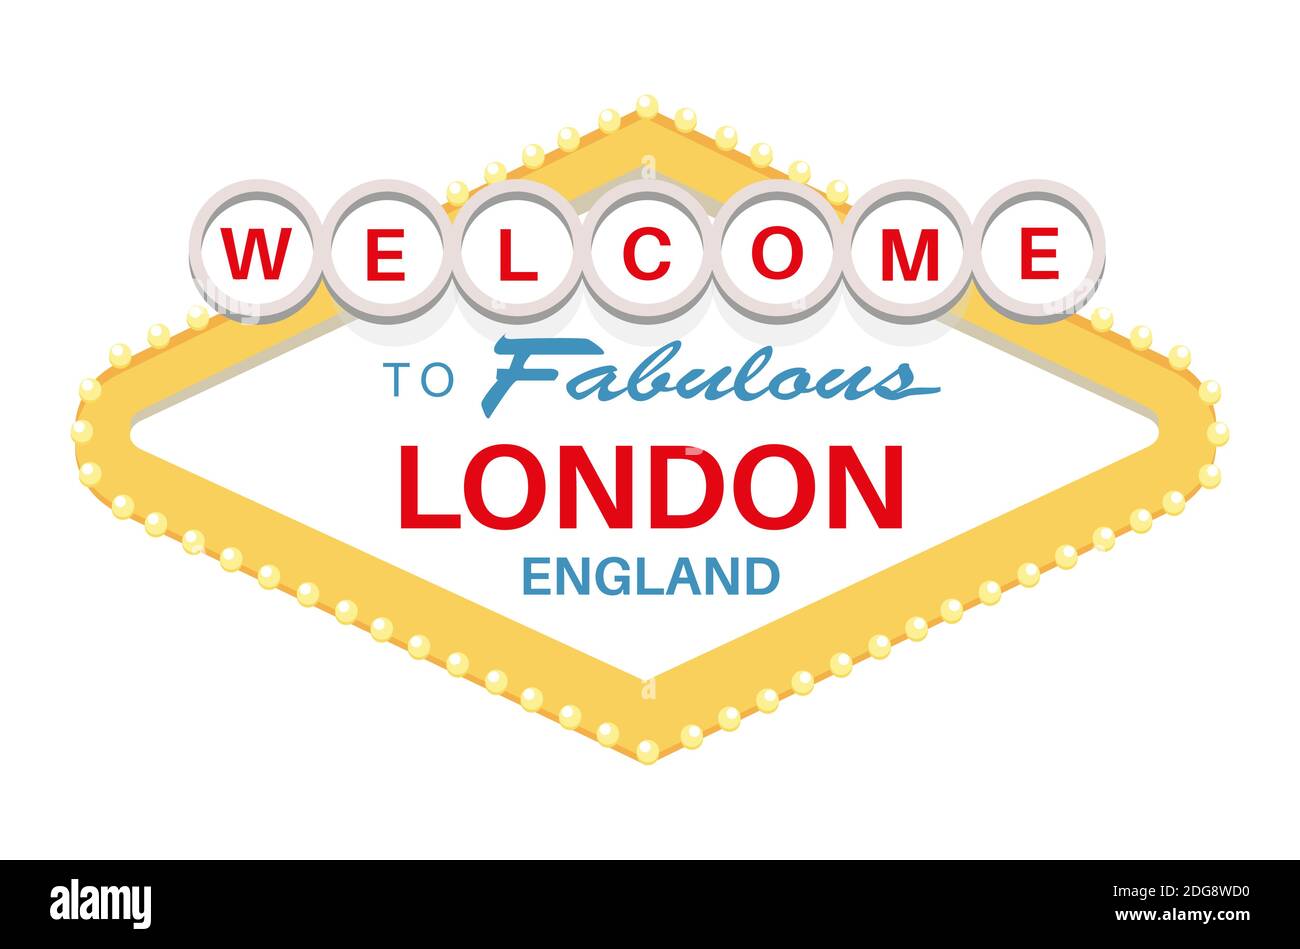 Bienvenue au fabuleux panneau Londres Angleterre - illustration vectorielle sur un arrière-plan blanc Illustration de Vecteur